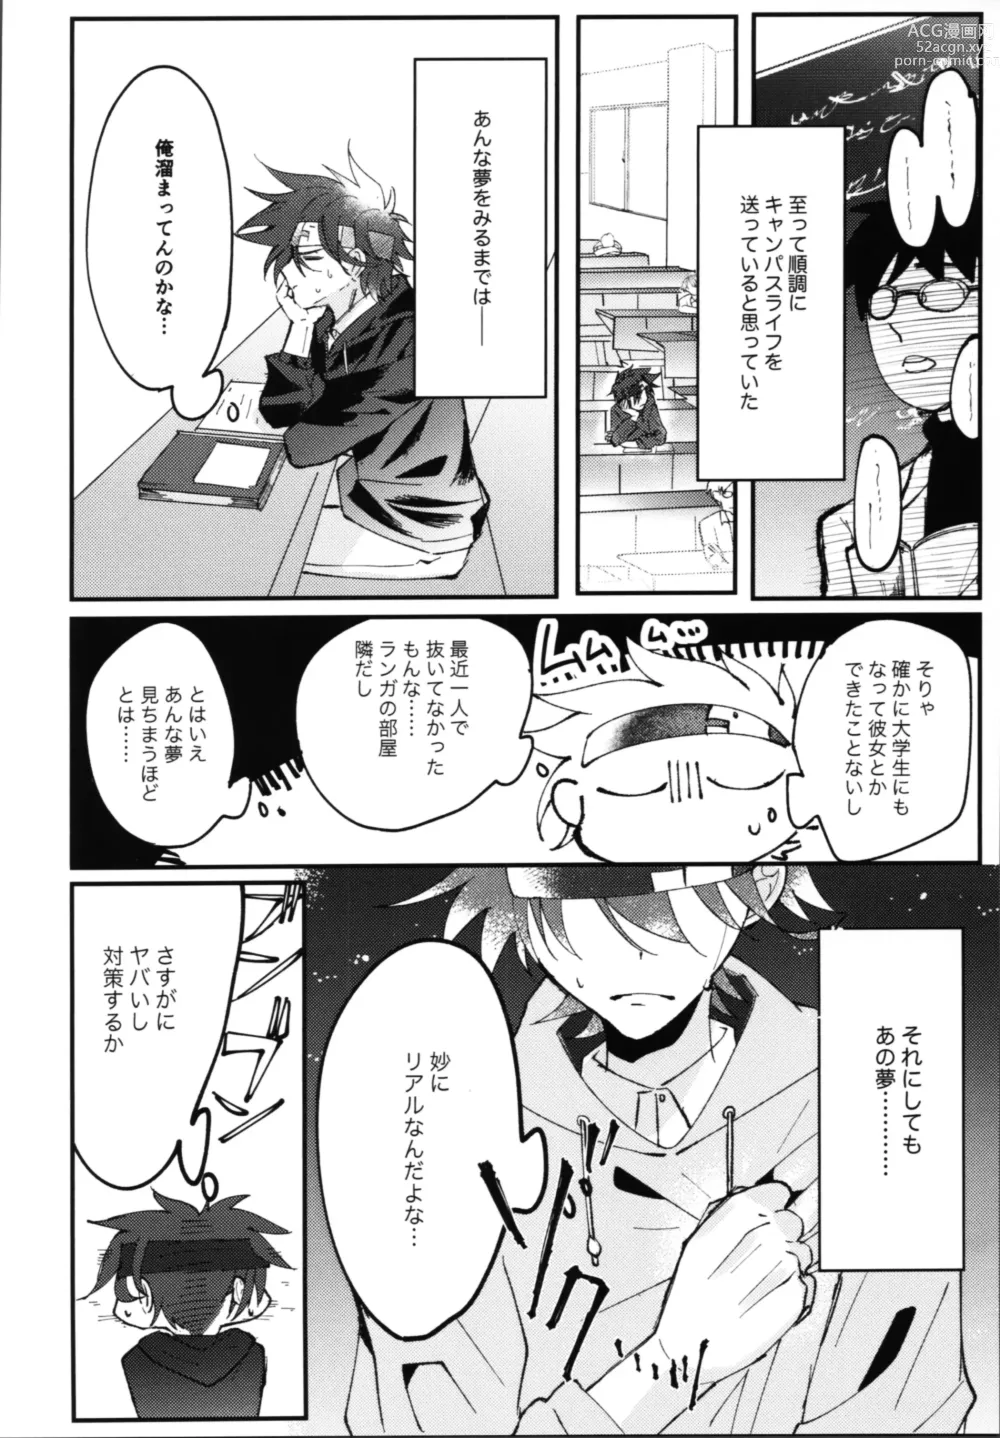 Page 5 of doujinshi Kimi no negao ni koishiteru